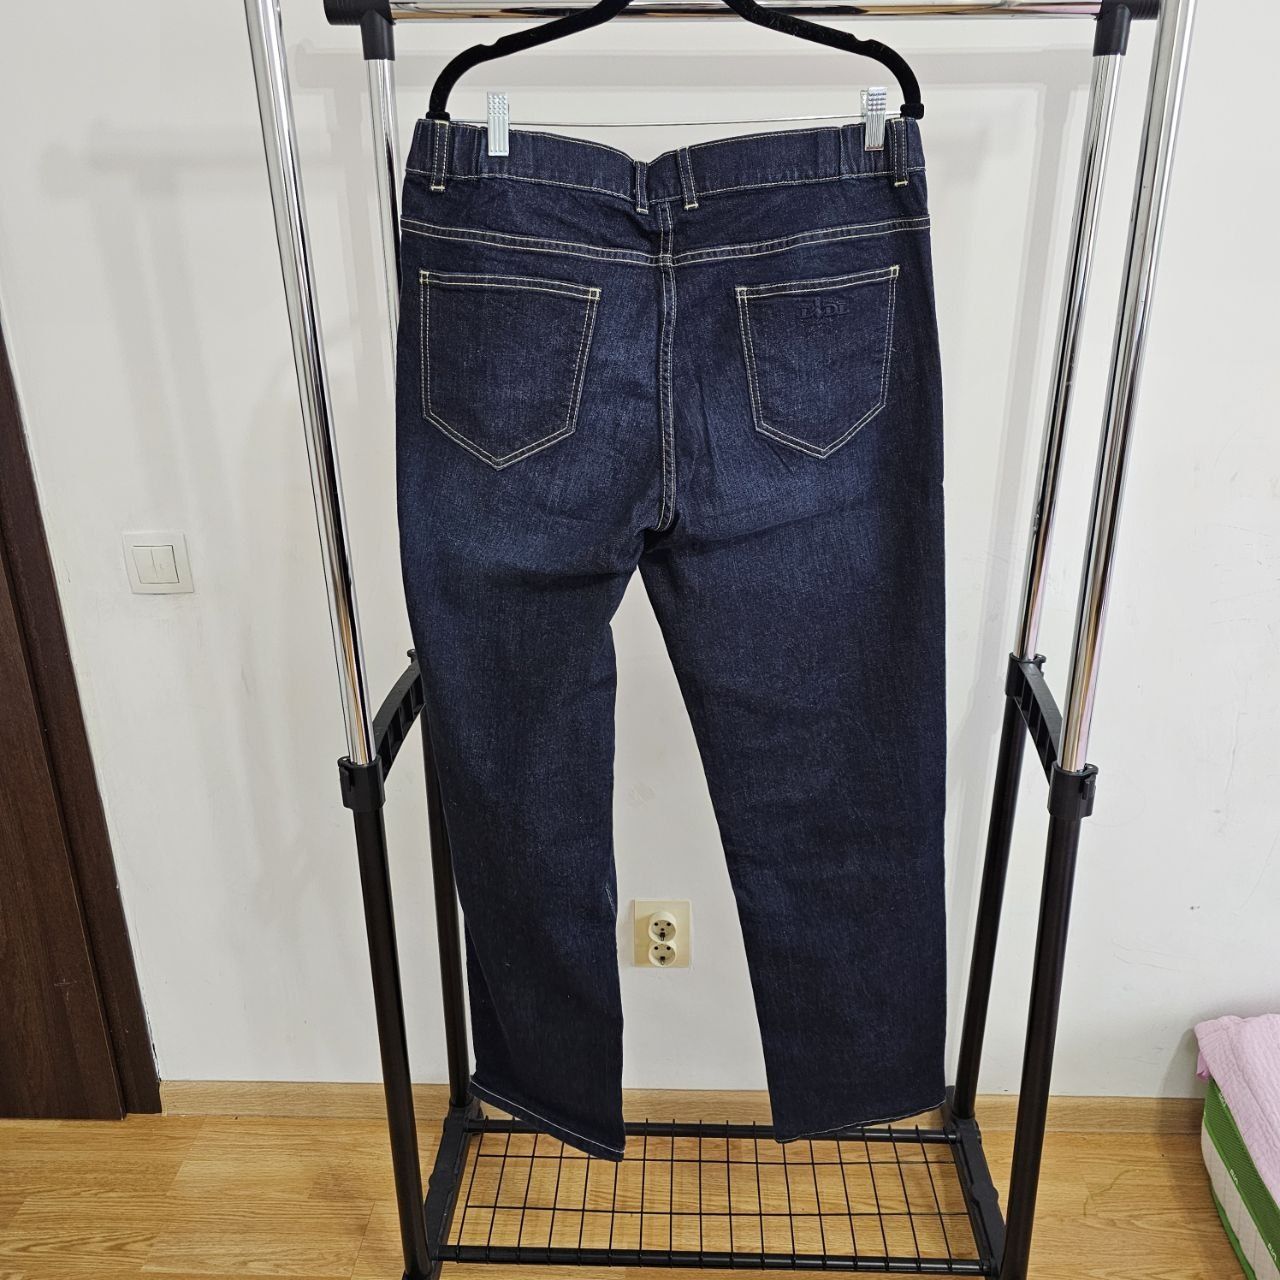 Blugi jeans barbat XL, din 98% bumbac organic și 2 % elastan, Lidl, no